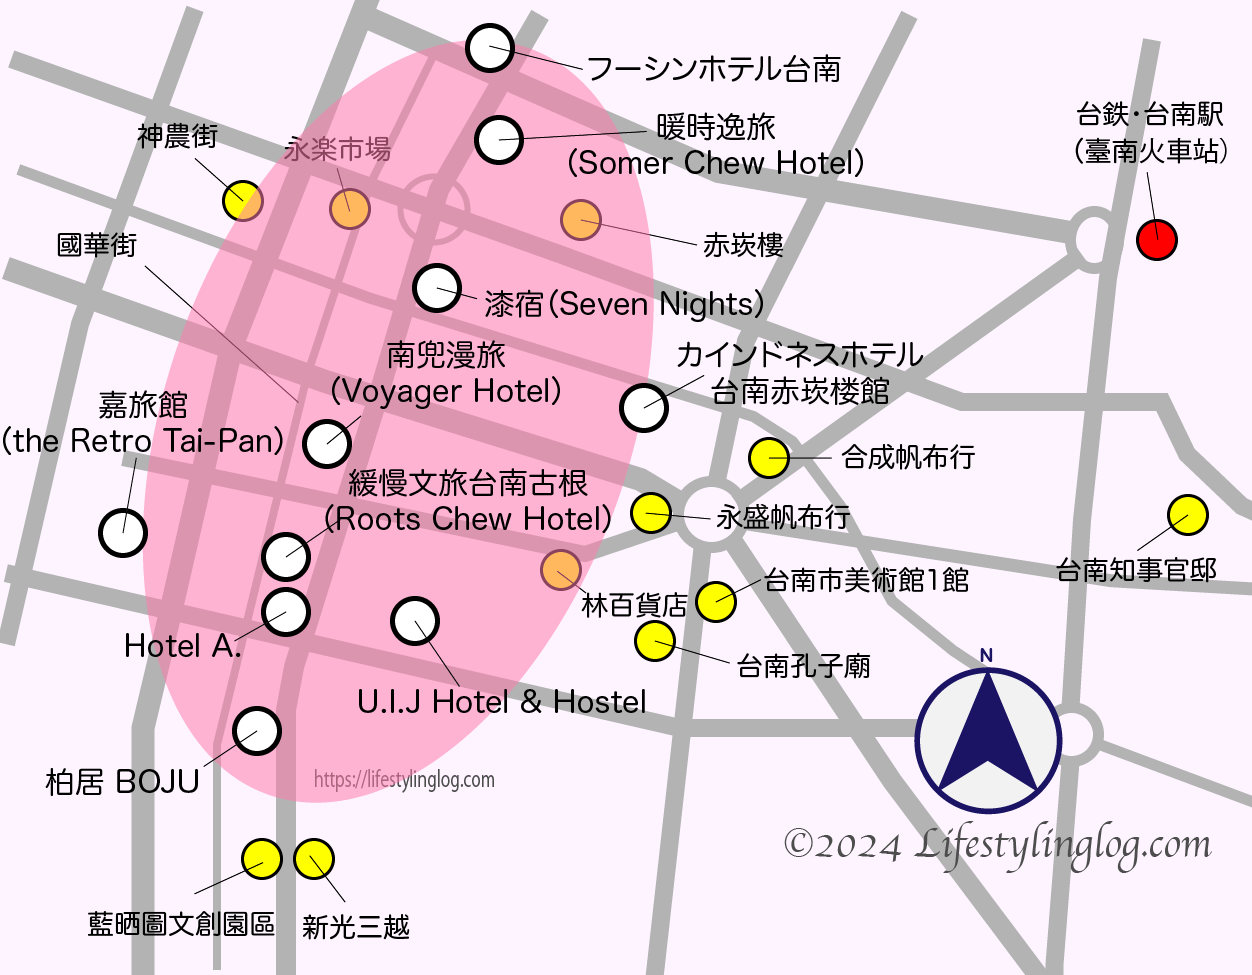 台南の國華街エリアのホテルの位置を示すイメージマップ